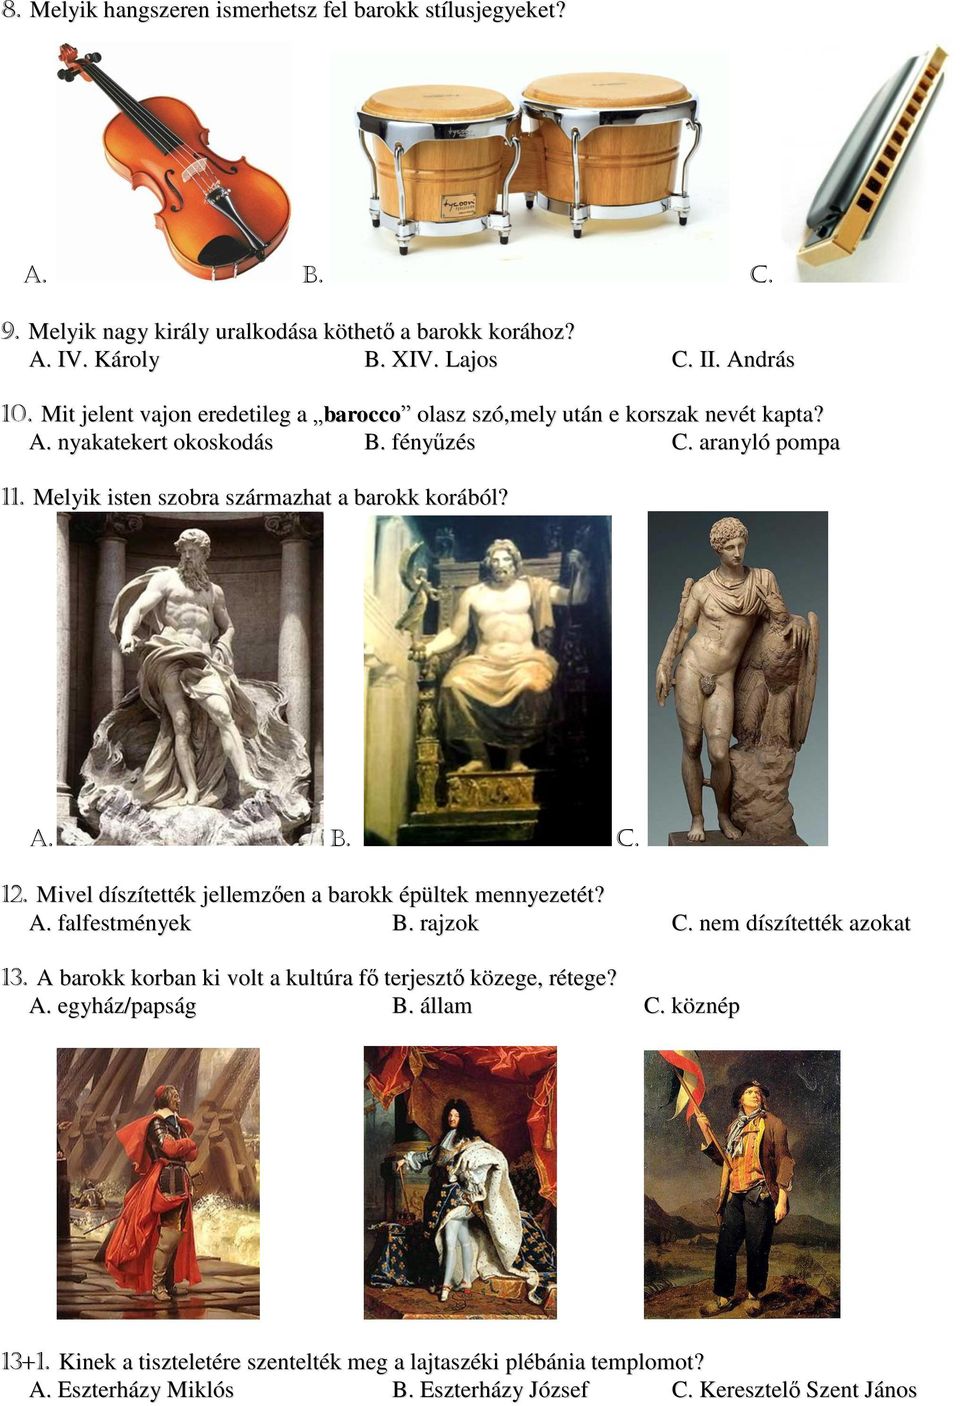 Melyik isten szobra származhat a barokk korából? A. B. C. 12. Mivel díszítették jellemzően a barokk épültek mennyezetét? A. falfestmények B. rajzok C. nem díszítették azokat 13.